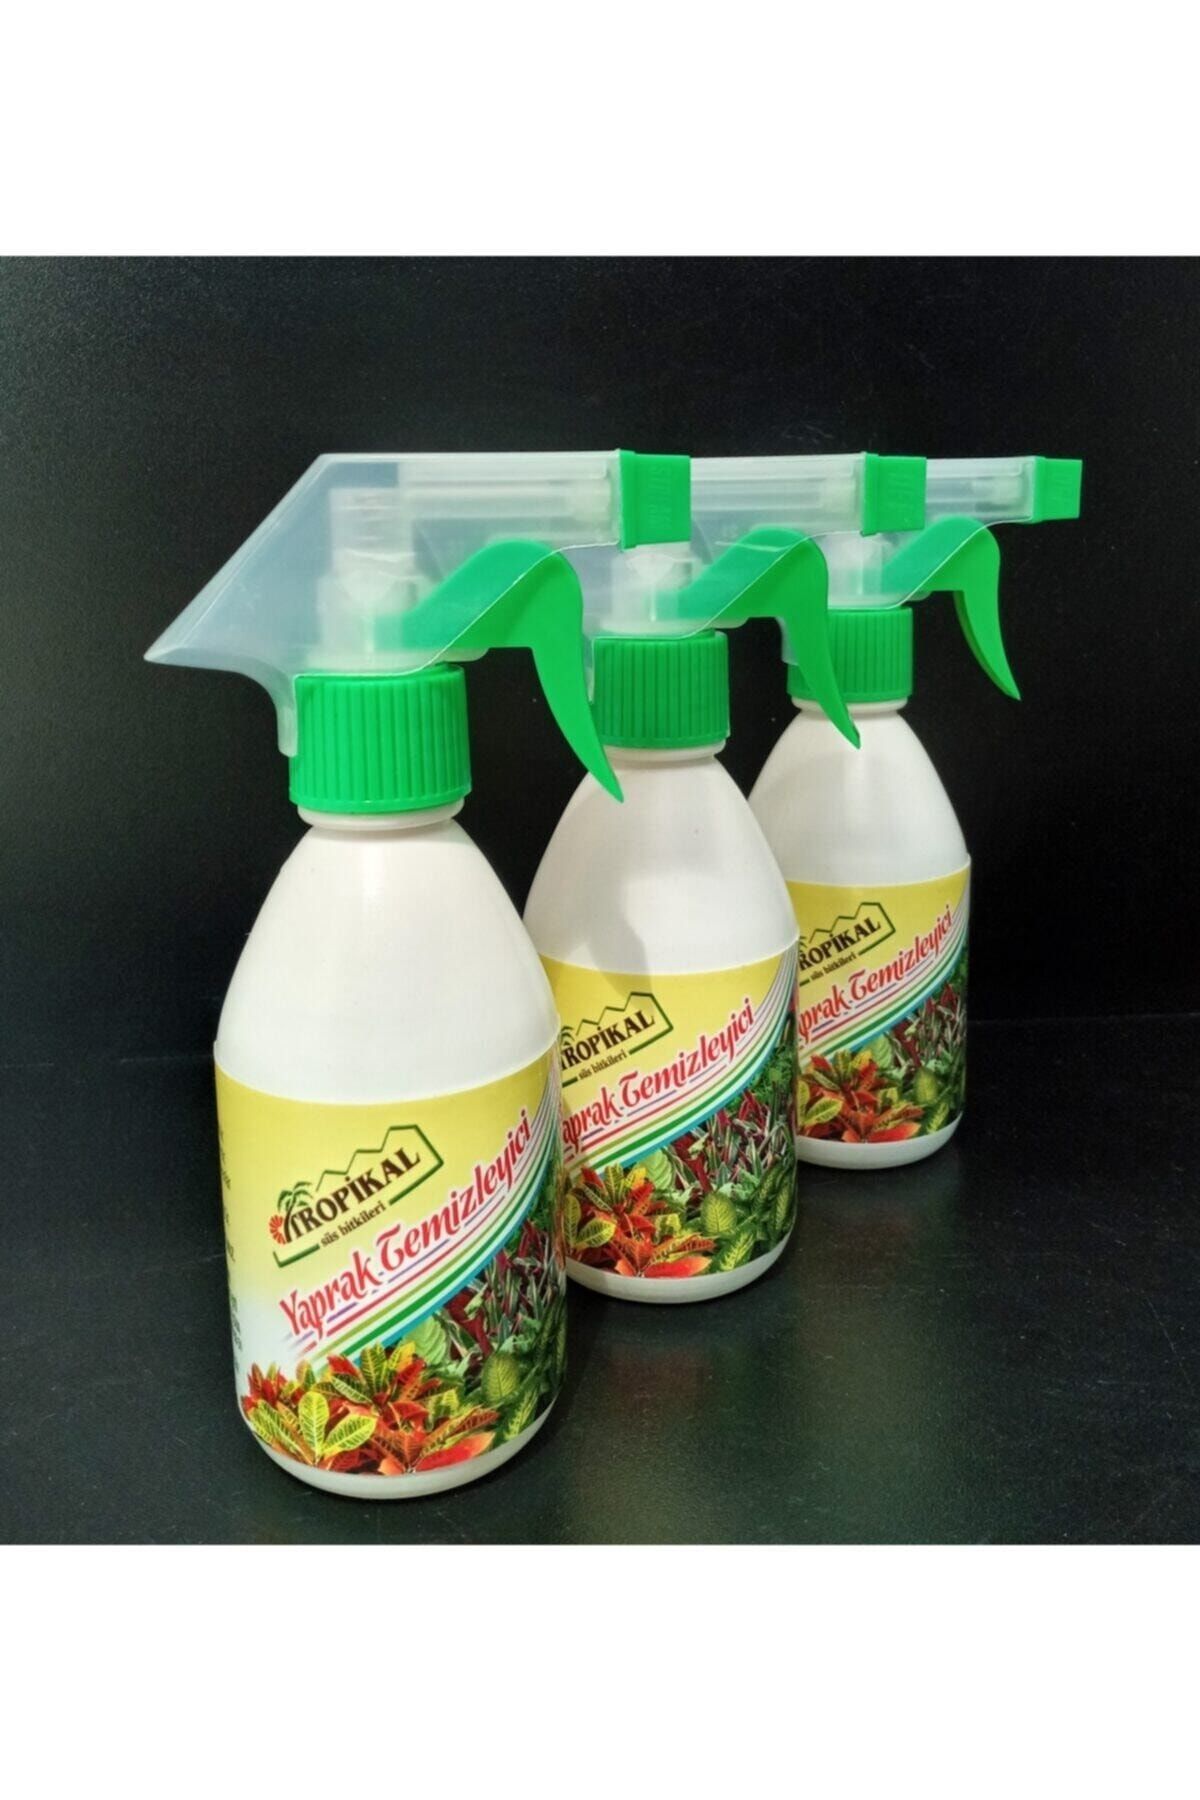 TROPİKAL Yaprak Temizleyici 3 Adet 250 ml Kokusuz Temizleyici Böceklere Karşı Etkili Yaprak Temizleyici